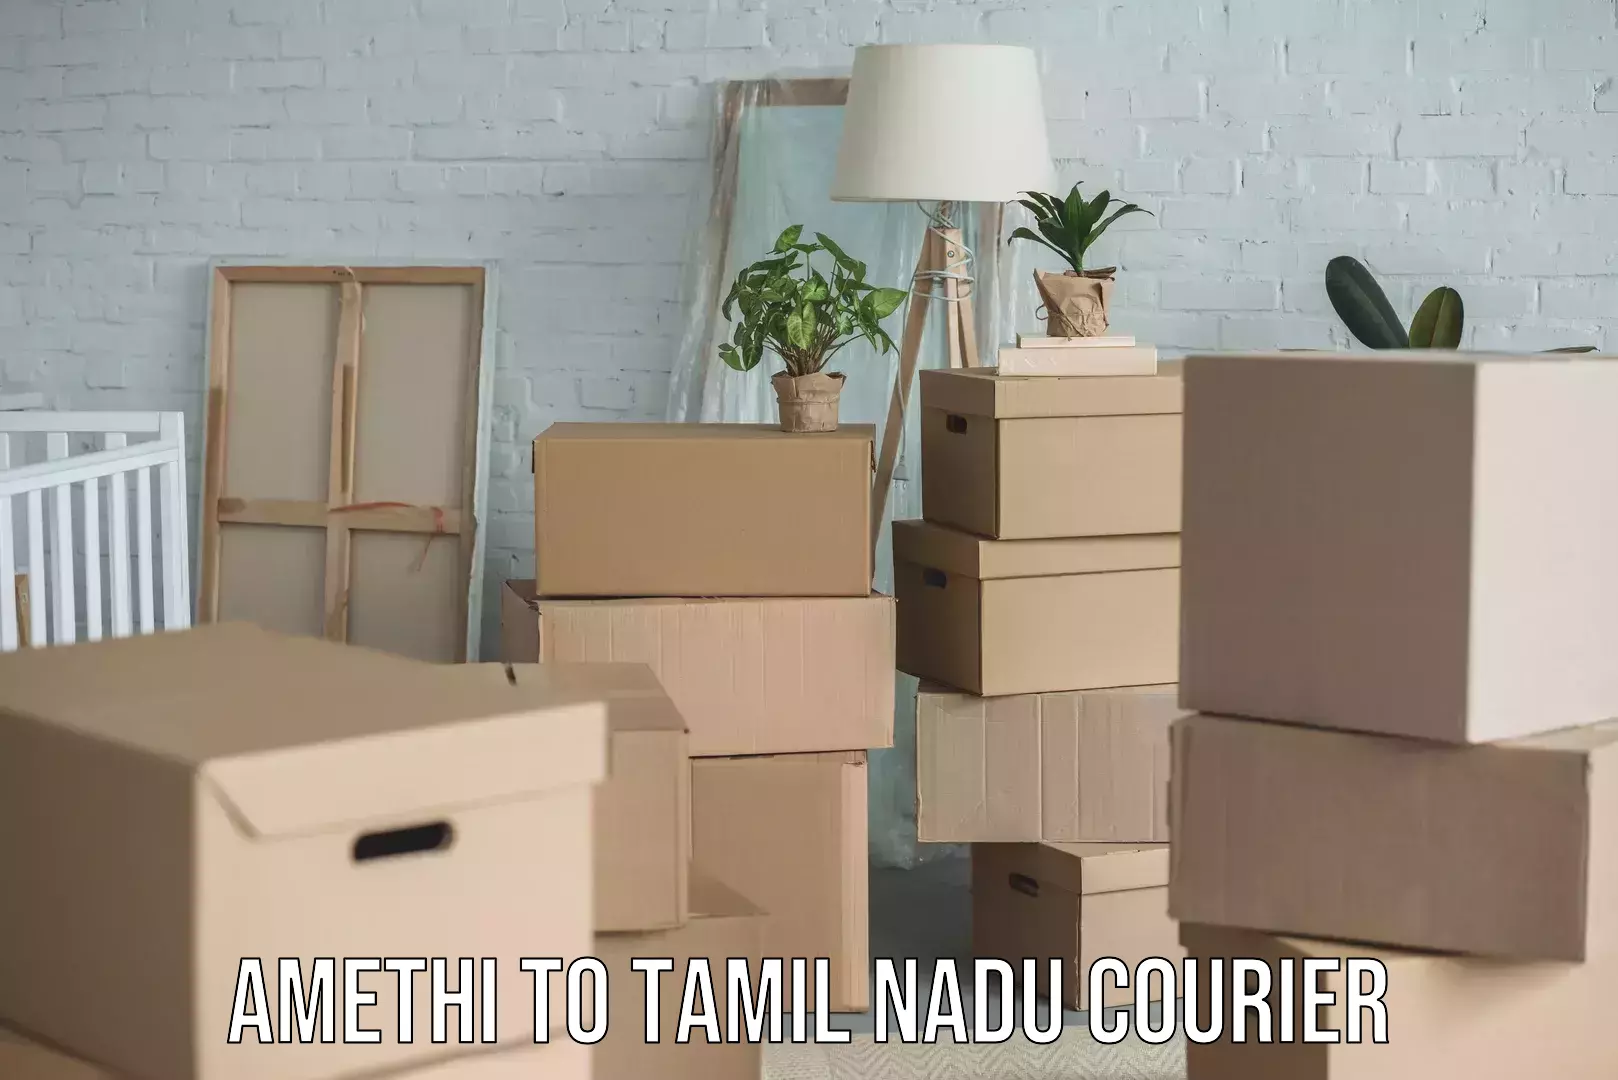 Parcel service for businesses Amethi to Tamil Nadu